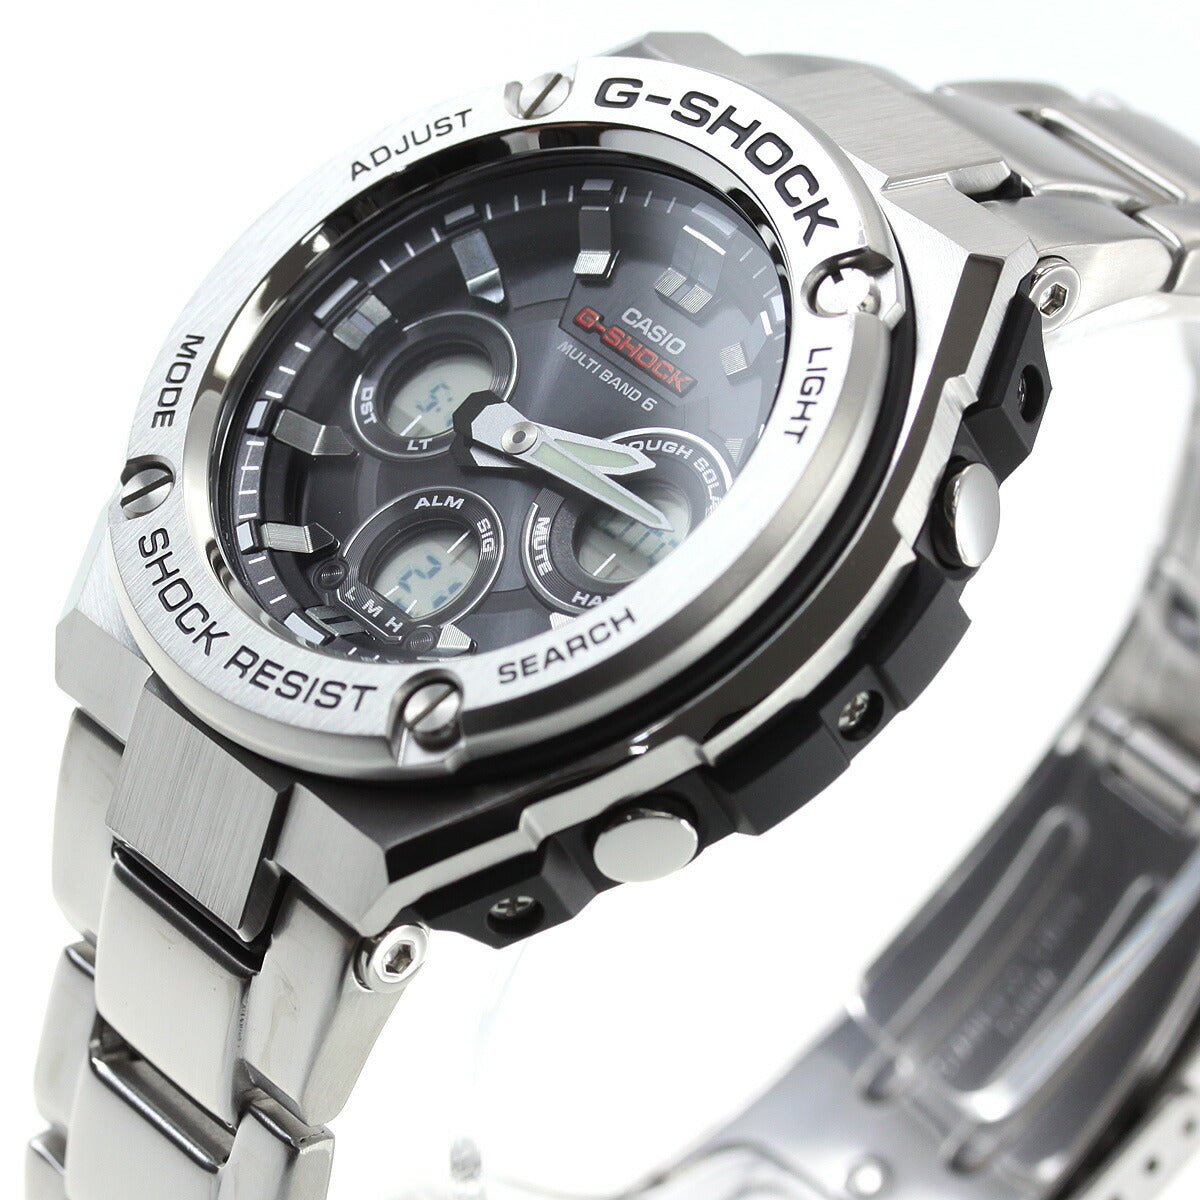 カシオ Gショック Gスチール CASIO G-SHOCK G-STEEL 電波 ソーラー 電波時計 腕時計 メンズ タフソーラー GST-W310D-1AJF